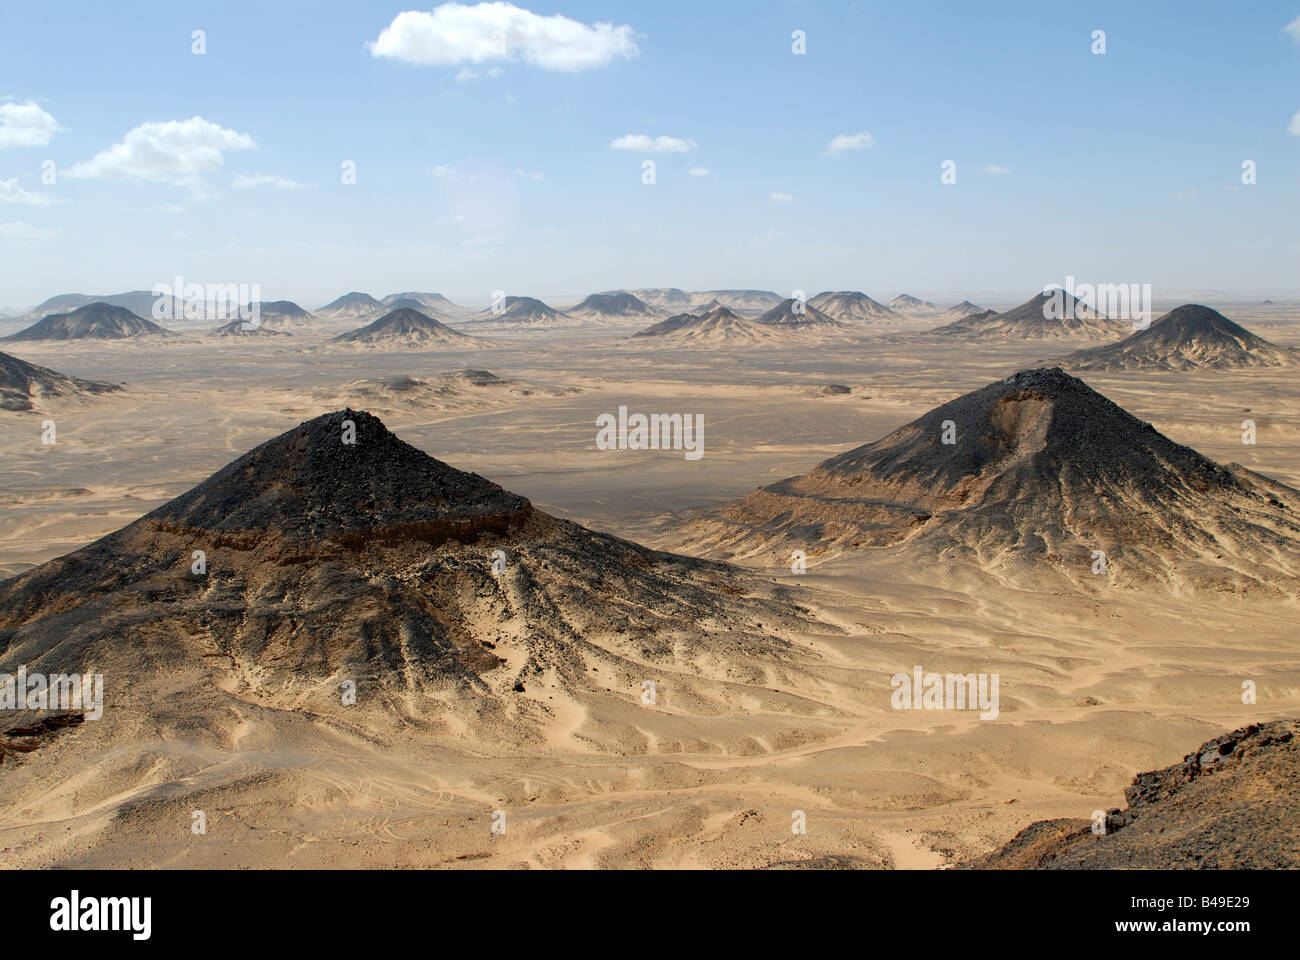 Black desert Egypt Stock Photo